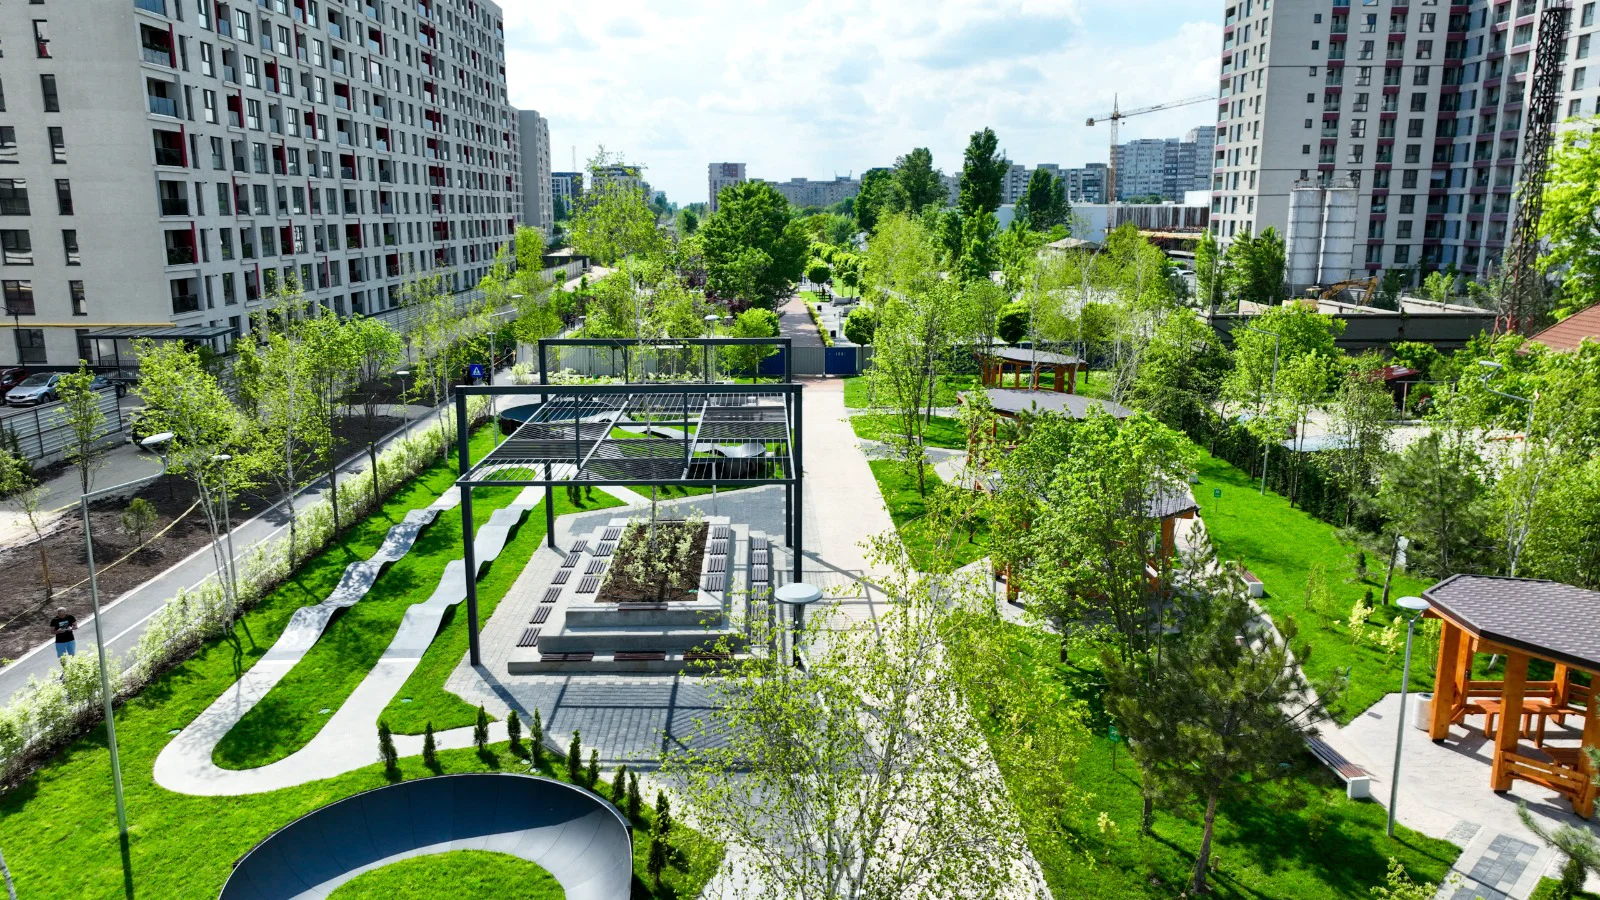 Parcul Liniei, faza II, a fost inaugurat. Are pădure urbană și spații speciale pentru munca remote